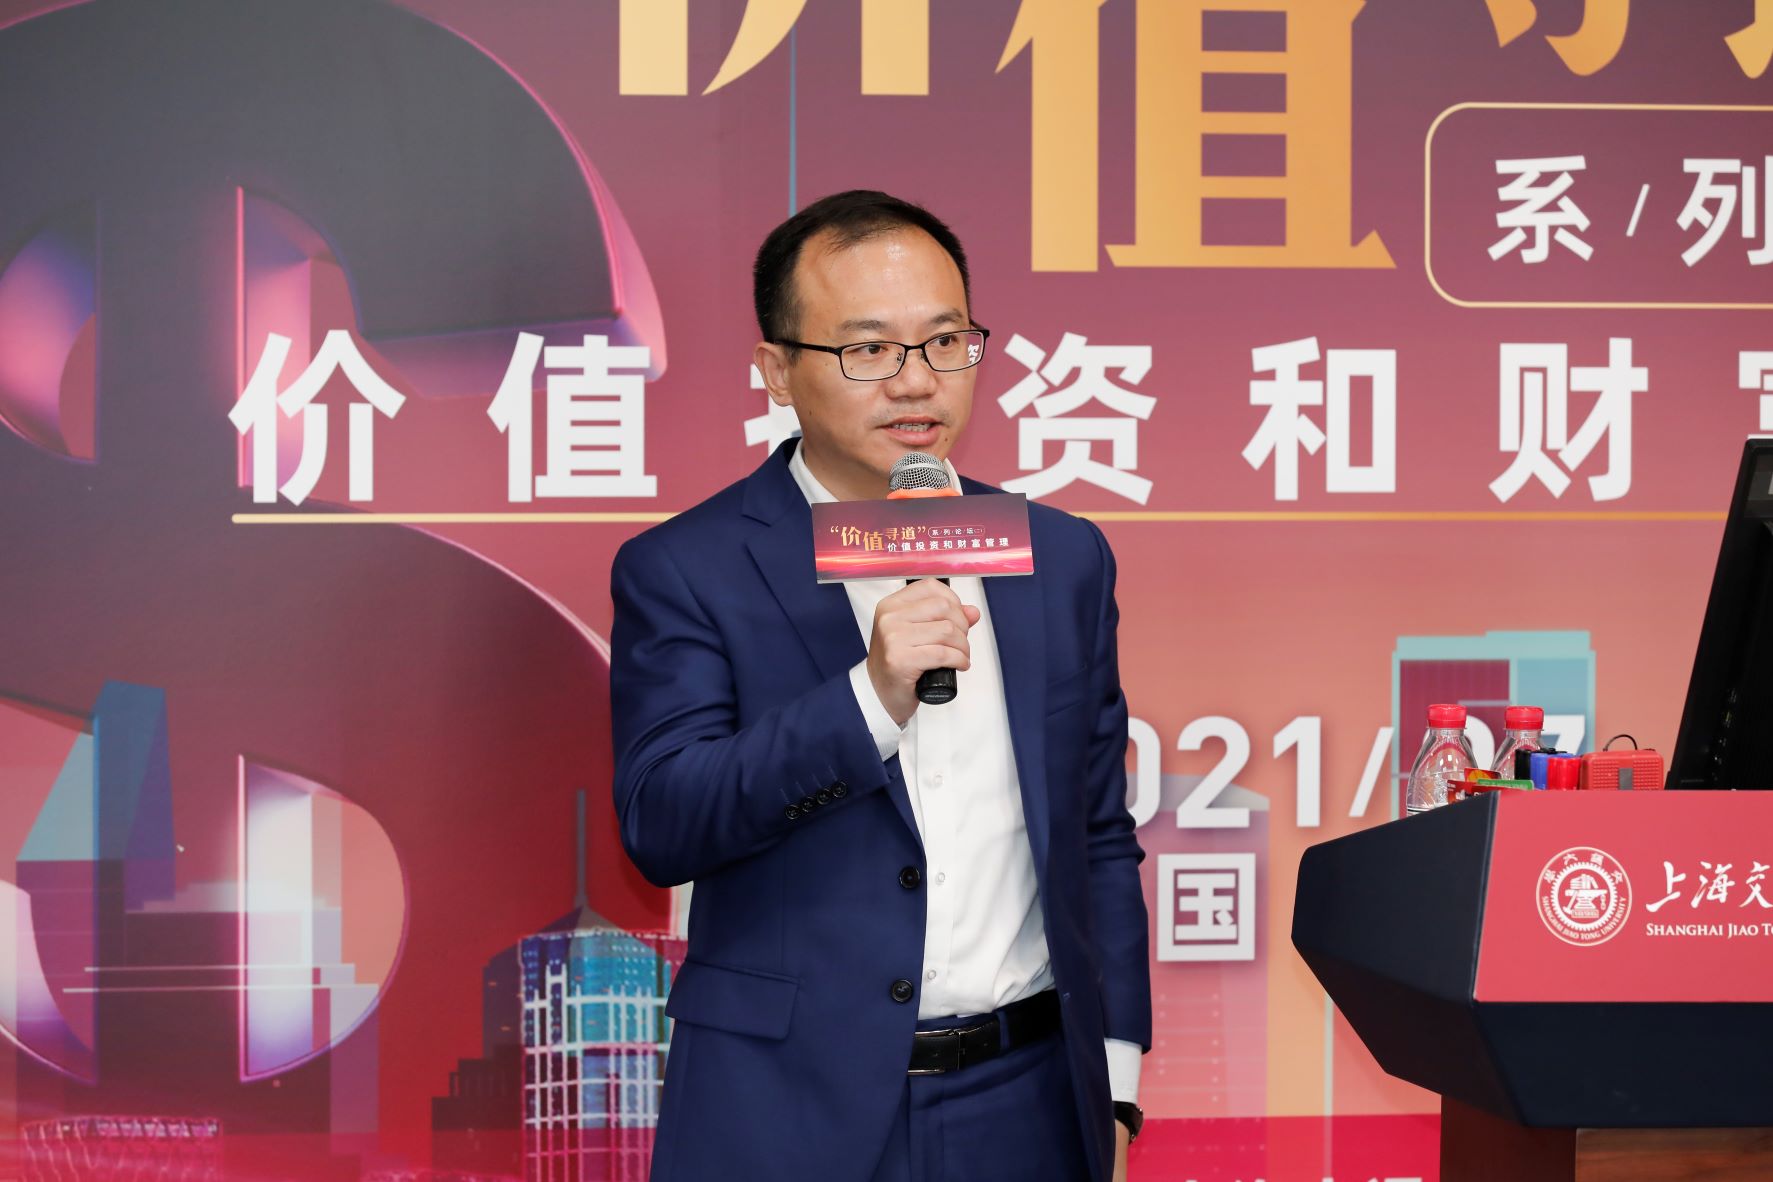 上海海通证券资产管理有限公司副总经理左秀海做题为“如何选择适合的金融产品管理财富”的演讲